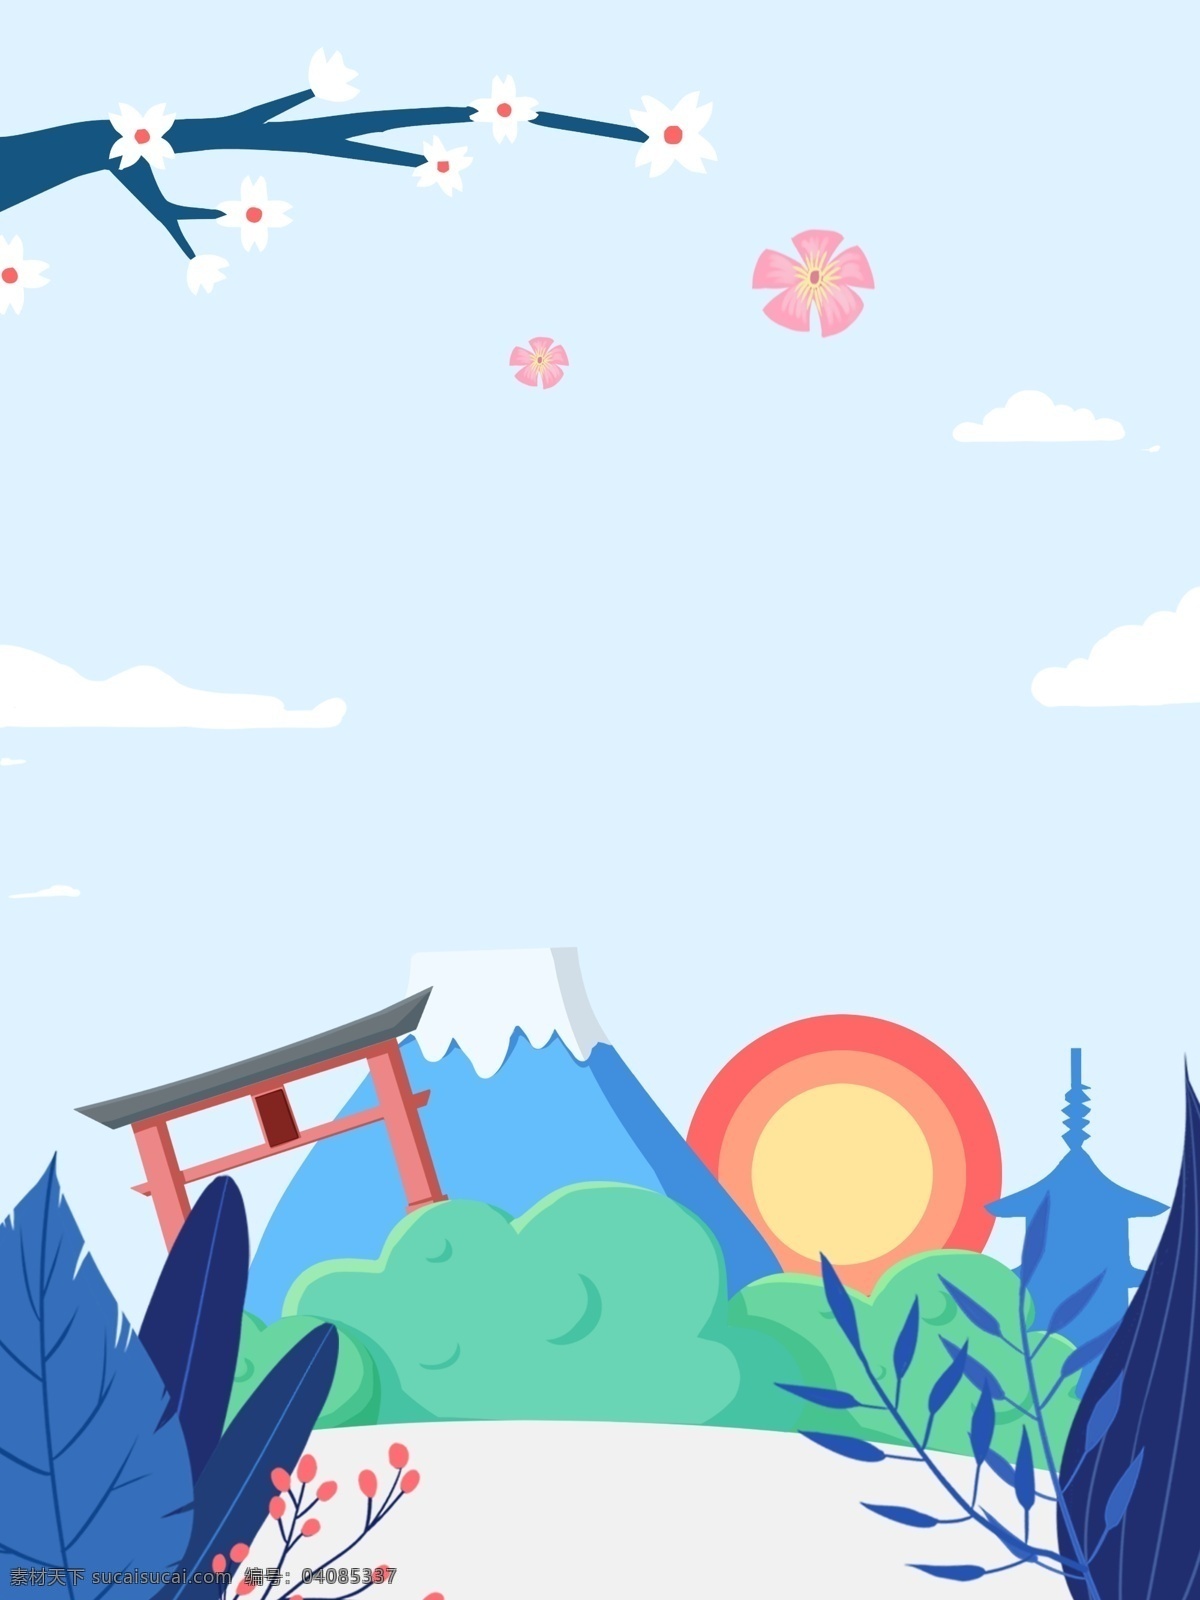 日 系 日本 风景 旅游风景 插画 背景 日系 日本风景 特邀背景 通用背景 广告背景 背景素材